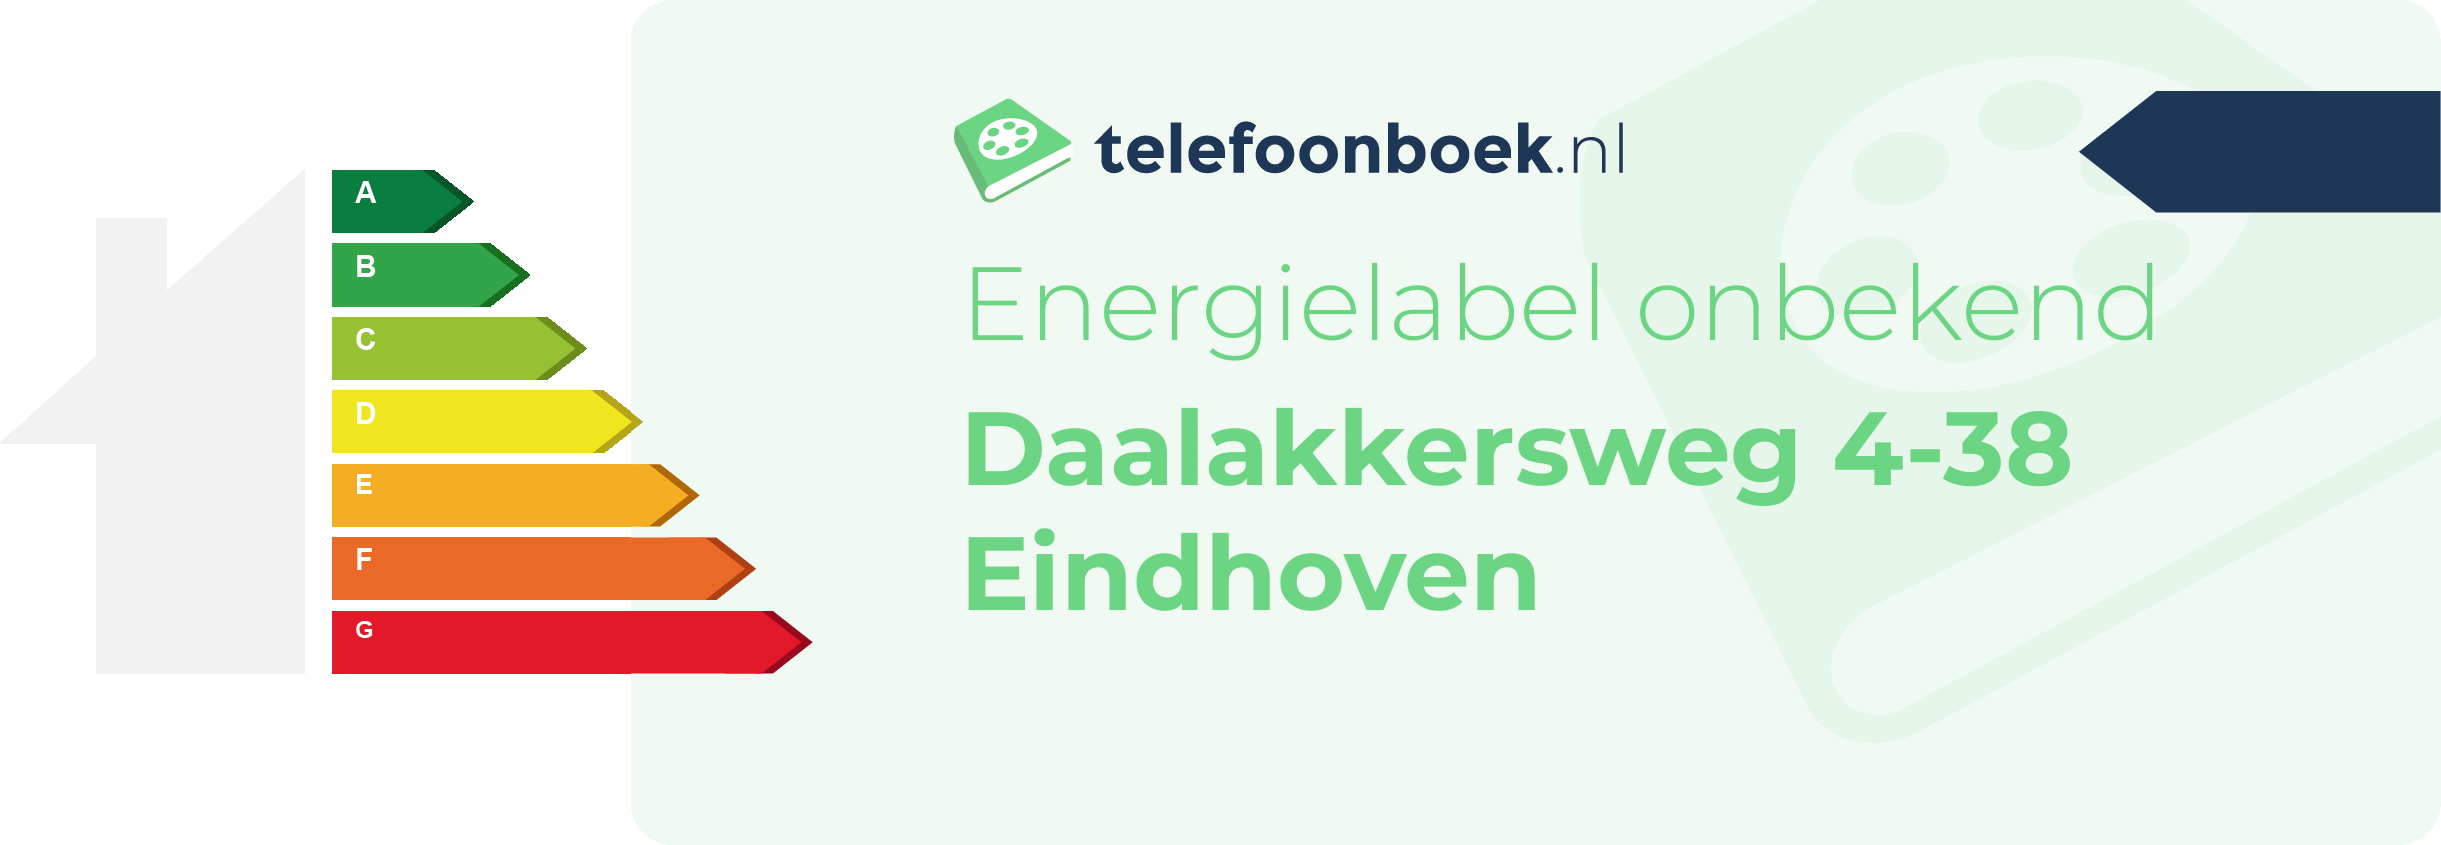 Energielabel Daalakkersweg 4-38 Eindhoven